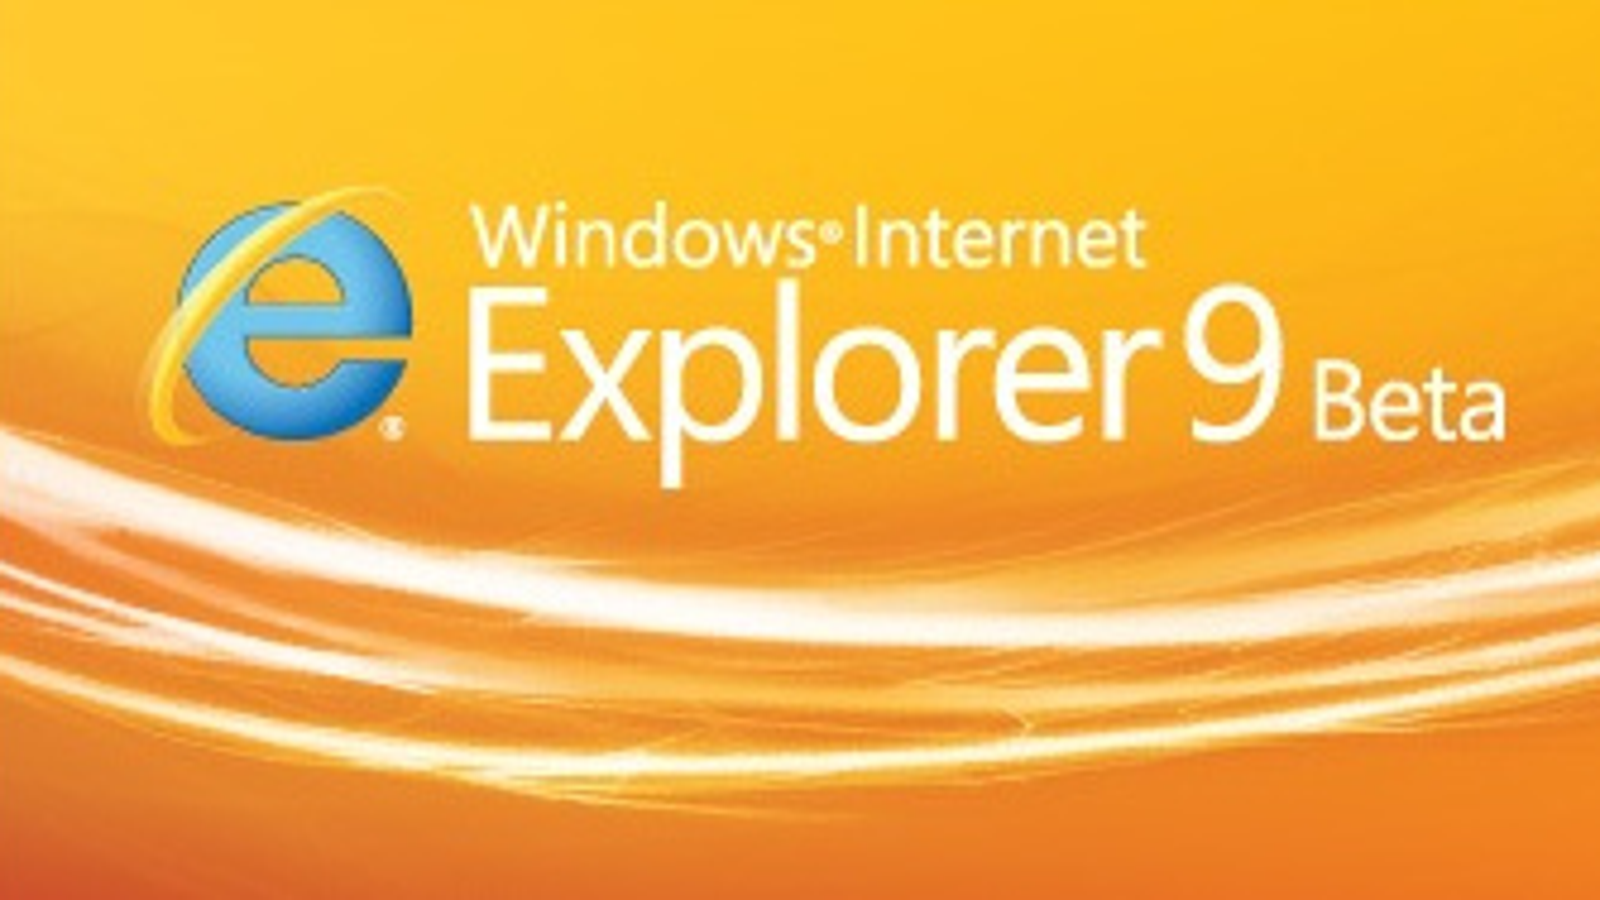 newest internet explorer download